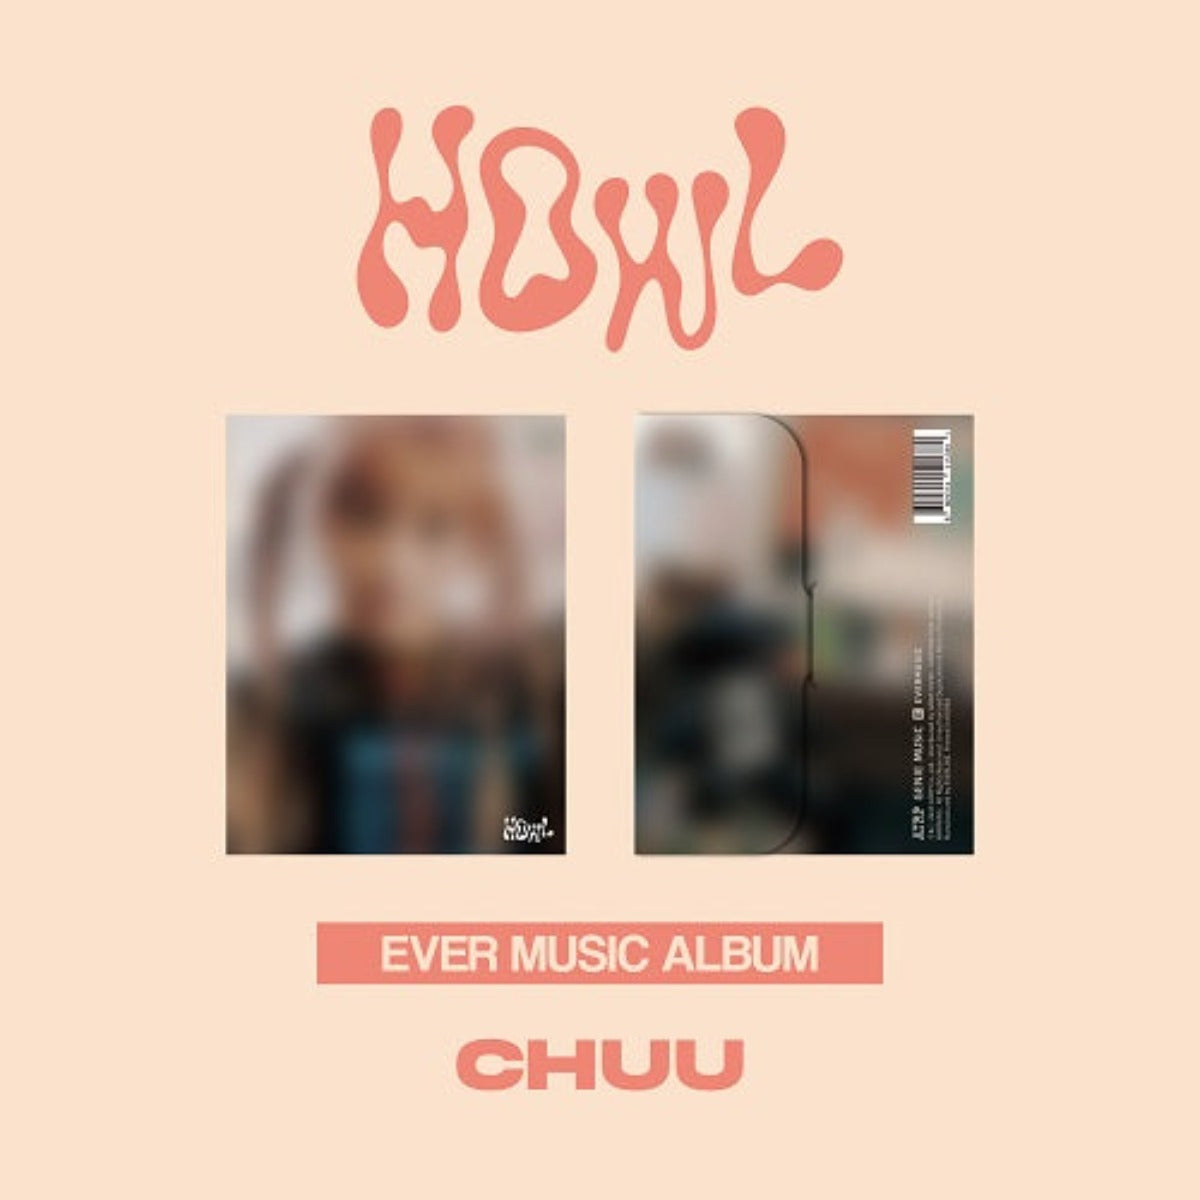 CHUU Mini Album Vol.1 - Howl (Ever Music Album)